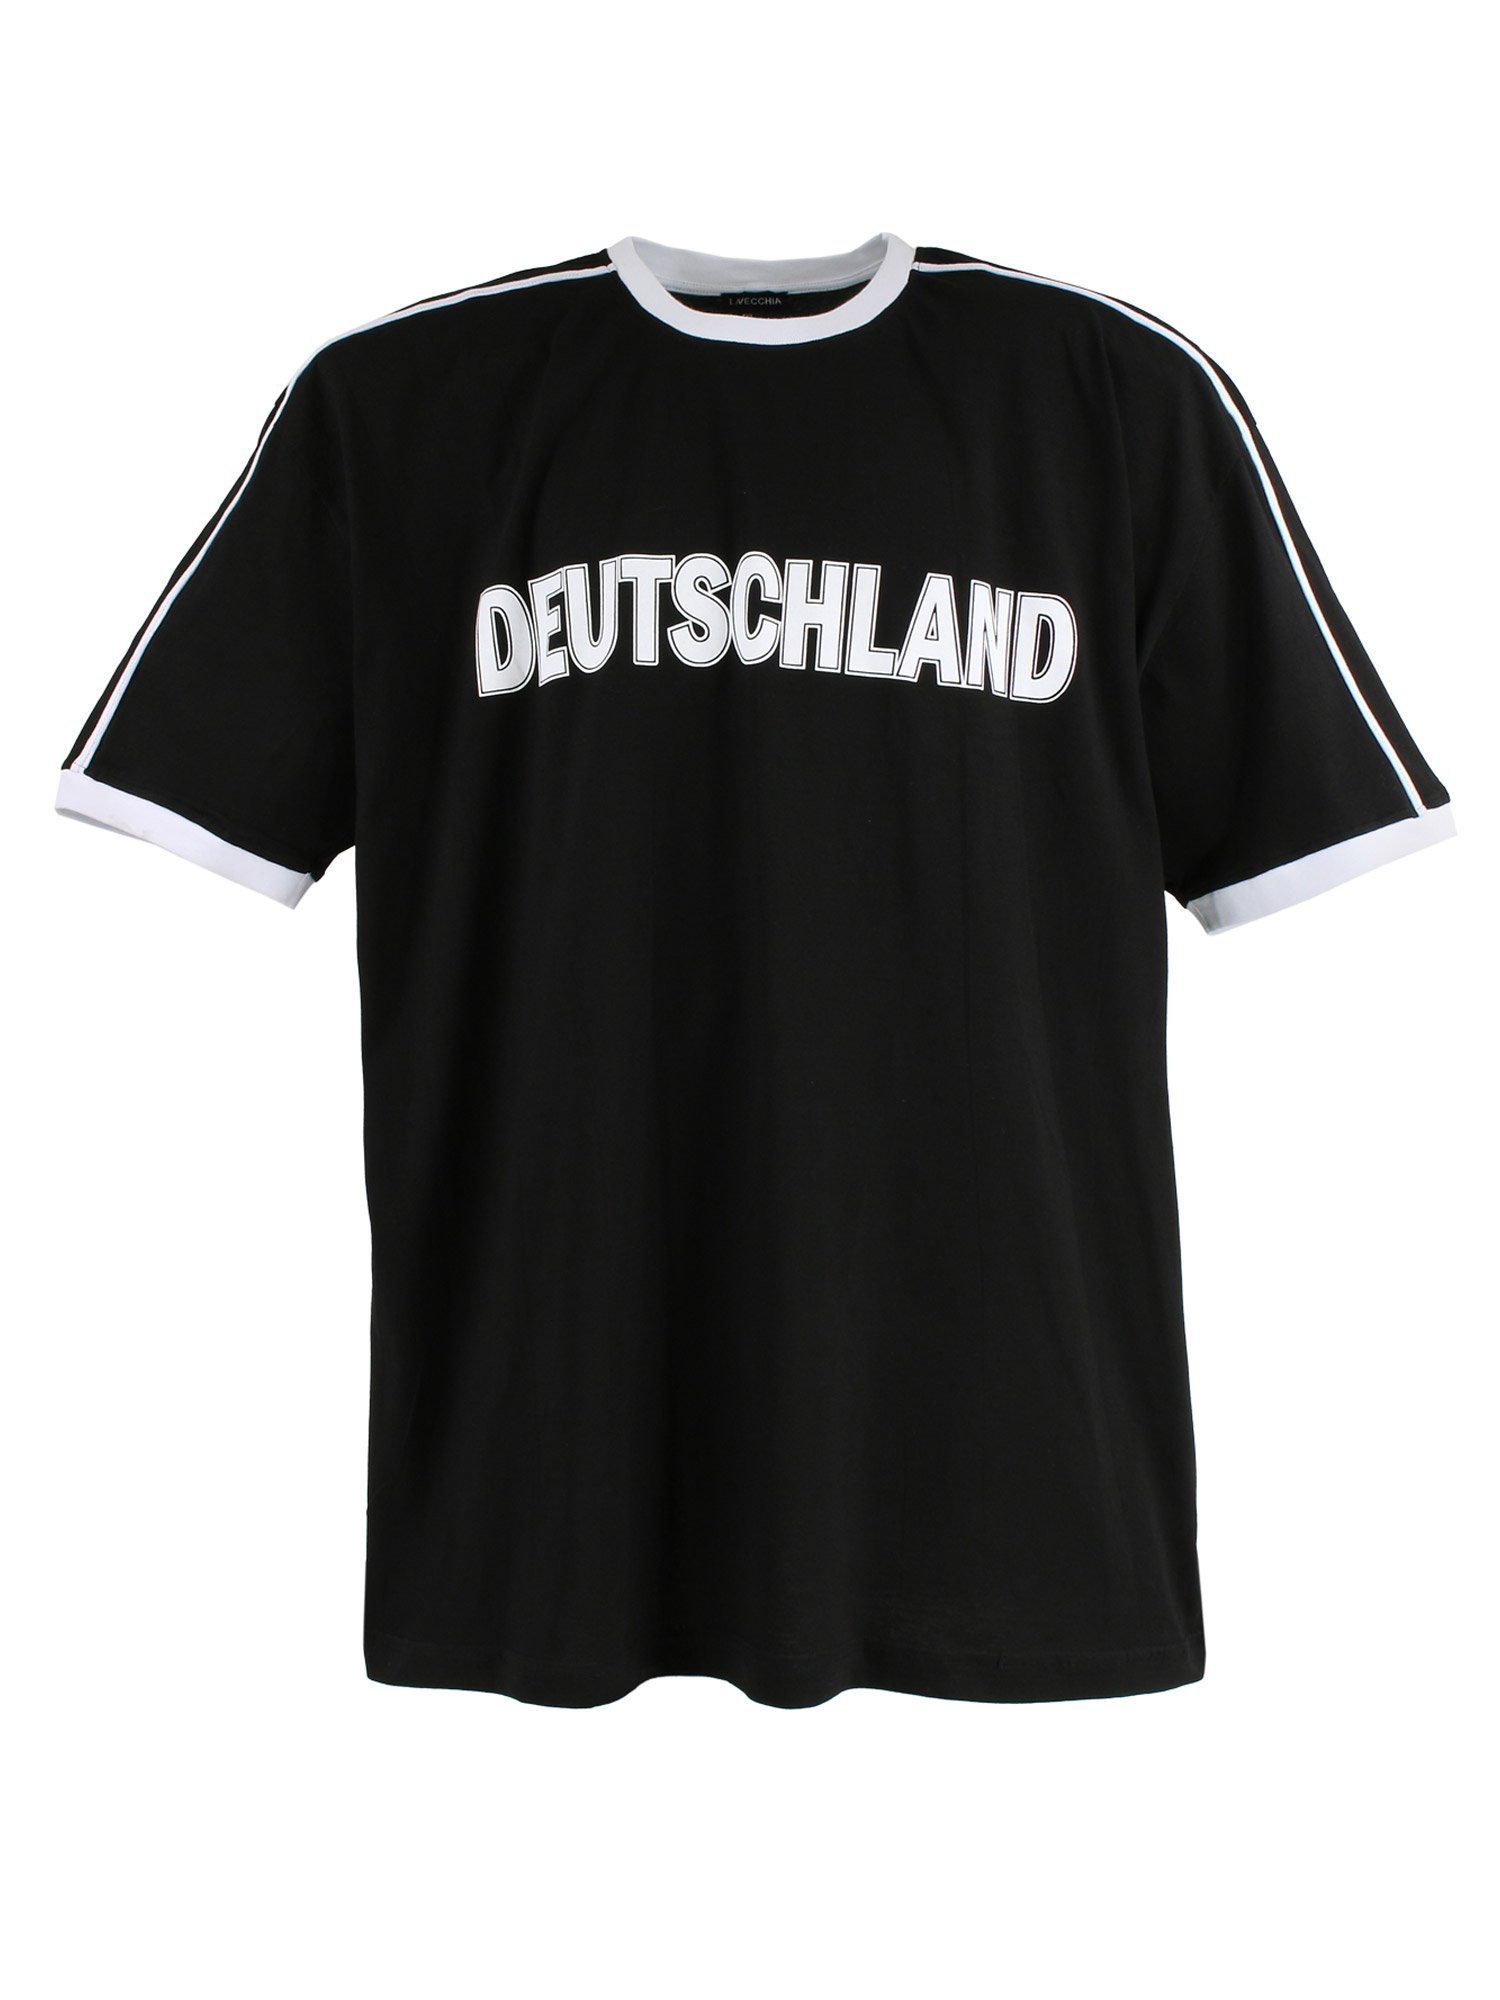 Lavecchia T-Shirt Übergrößen Herren Shirt LV-120 Herrenshirt Deutschland